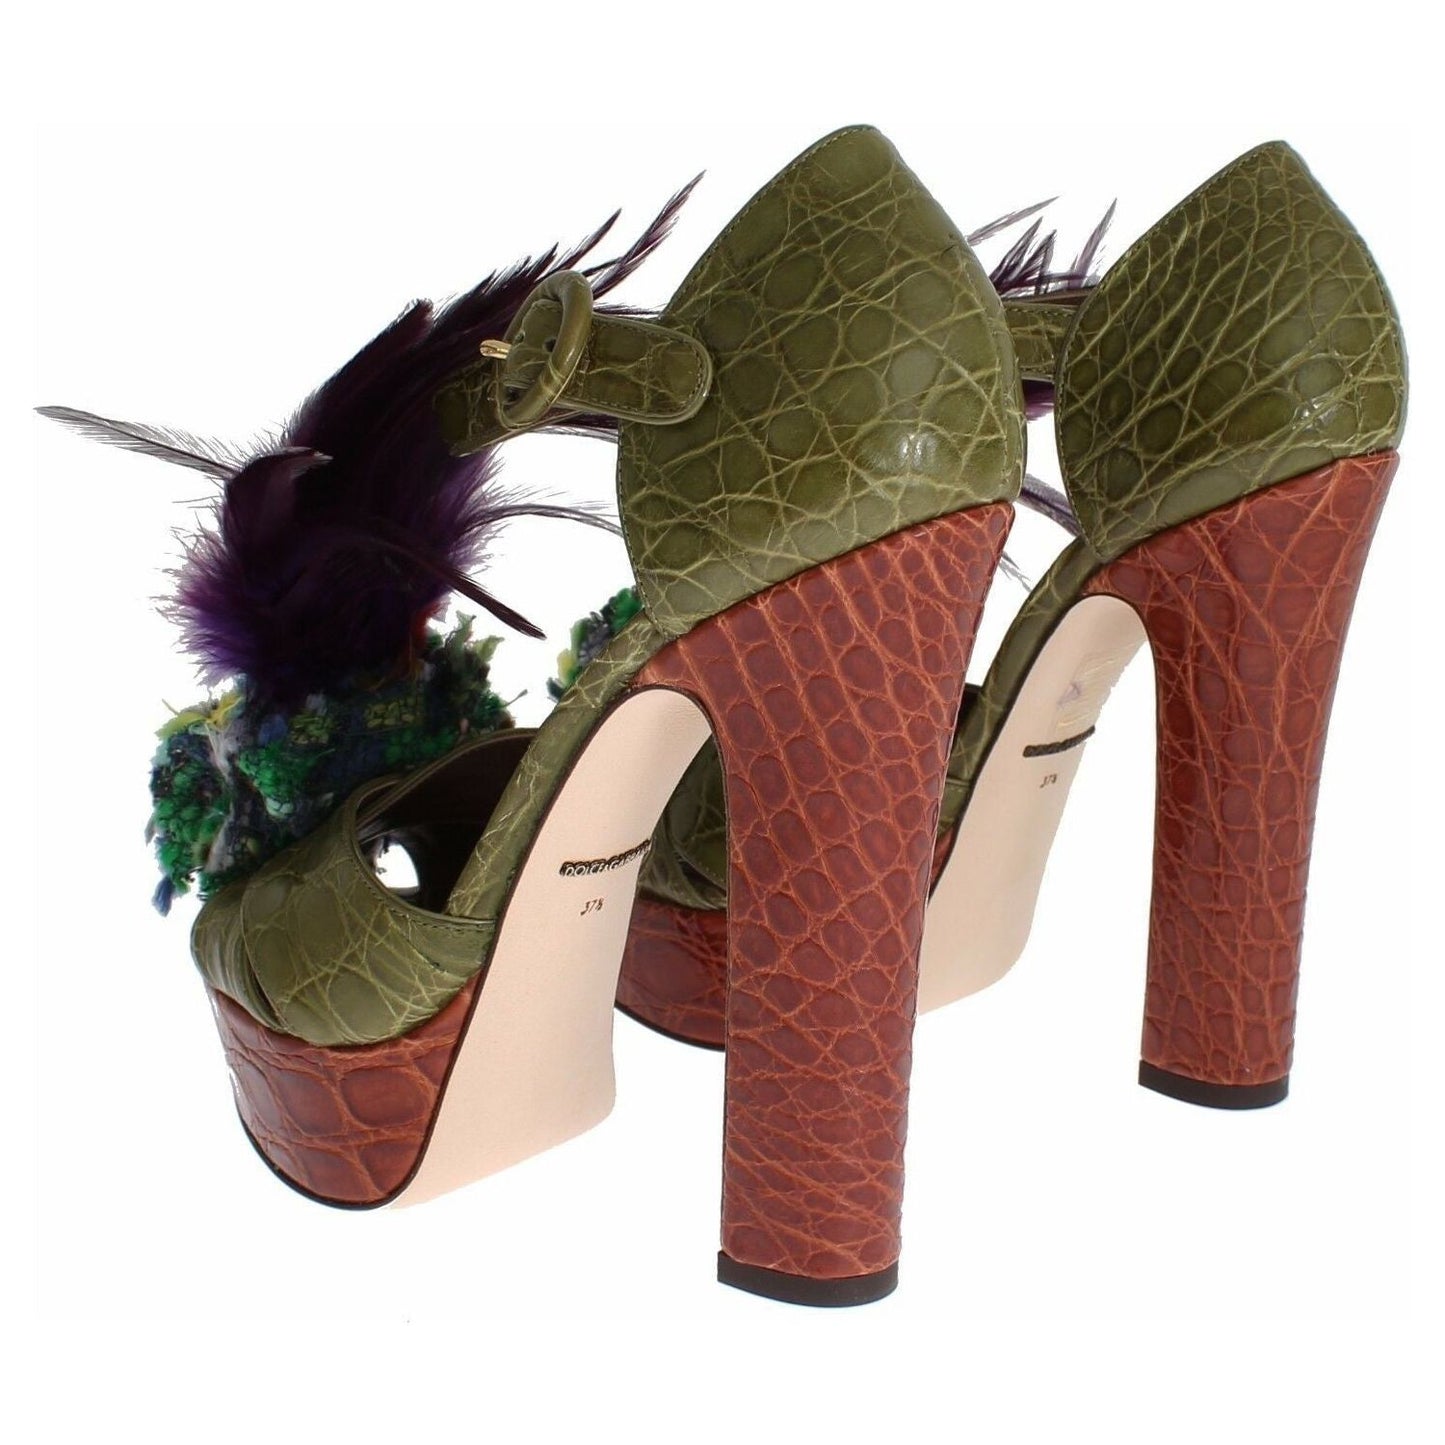 Dolce & Gabbana Crystal Enchanted Ankle Strap Sandals green-leather-crystal-platform-sandal-shoes s-l1600-98-b119e3ec-47d.jpg